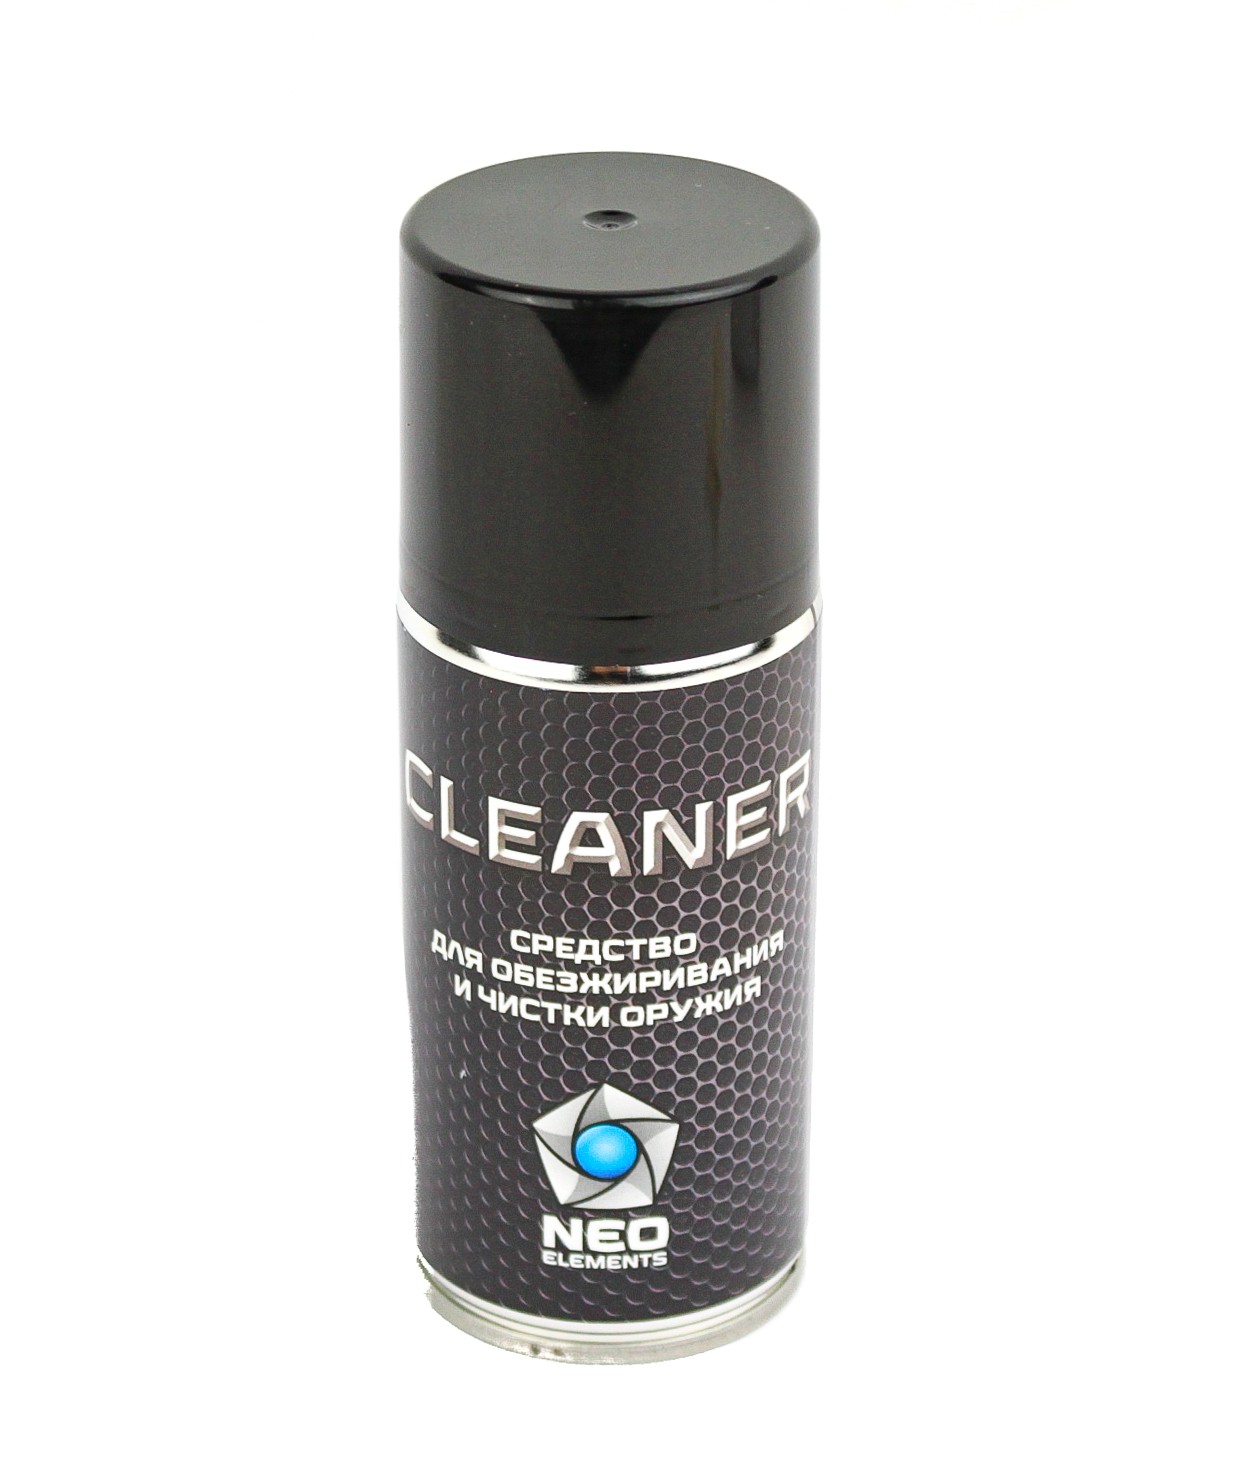 Средство Neo Elements Cleaner для обезжиривания оружия 210мл - фото 1